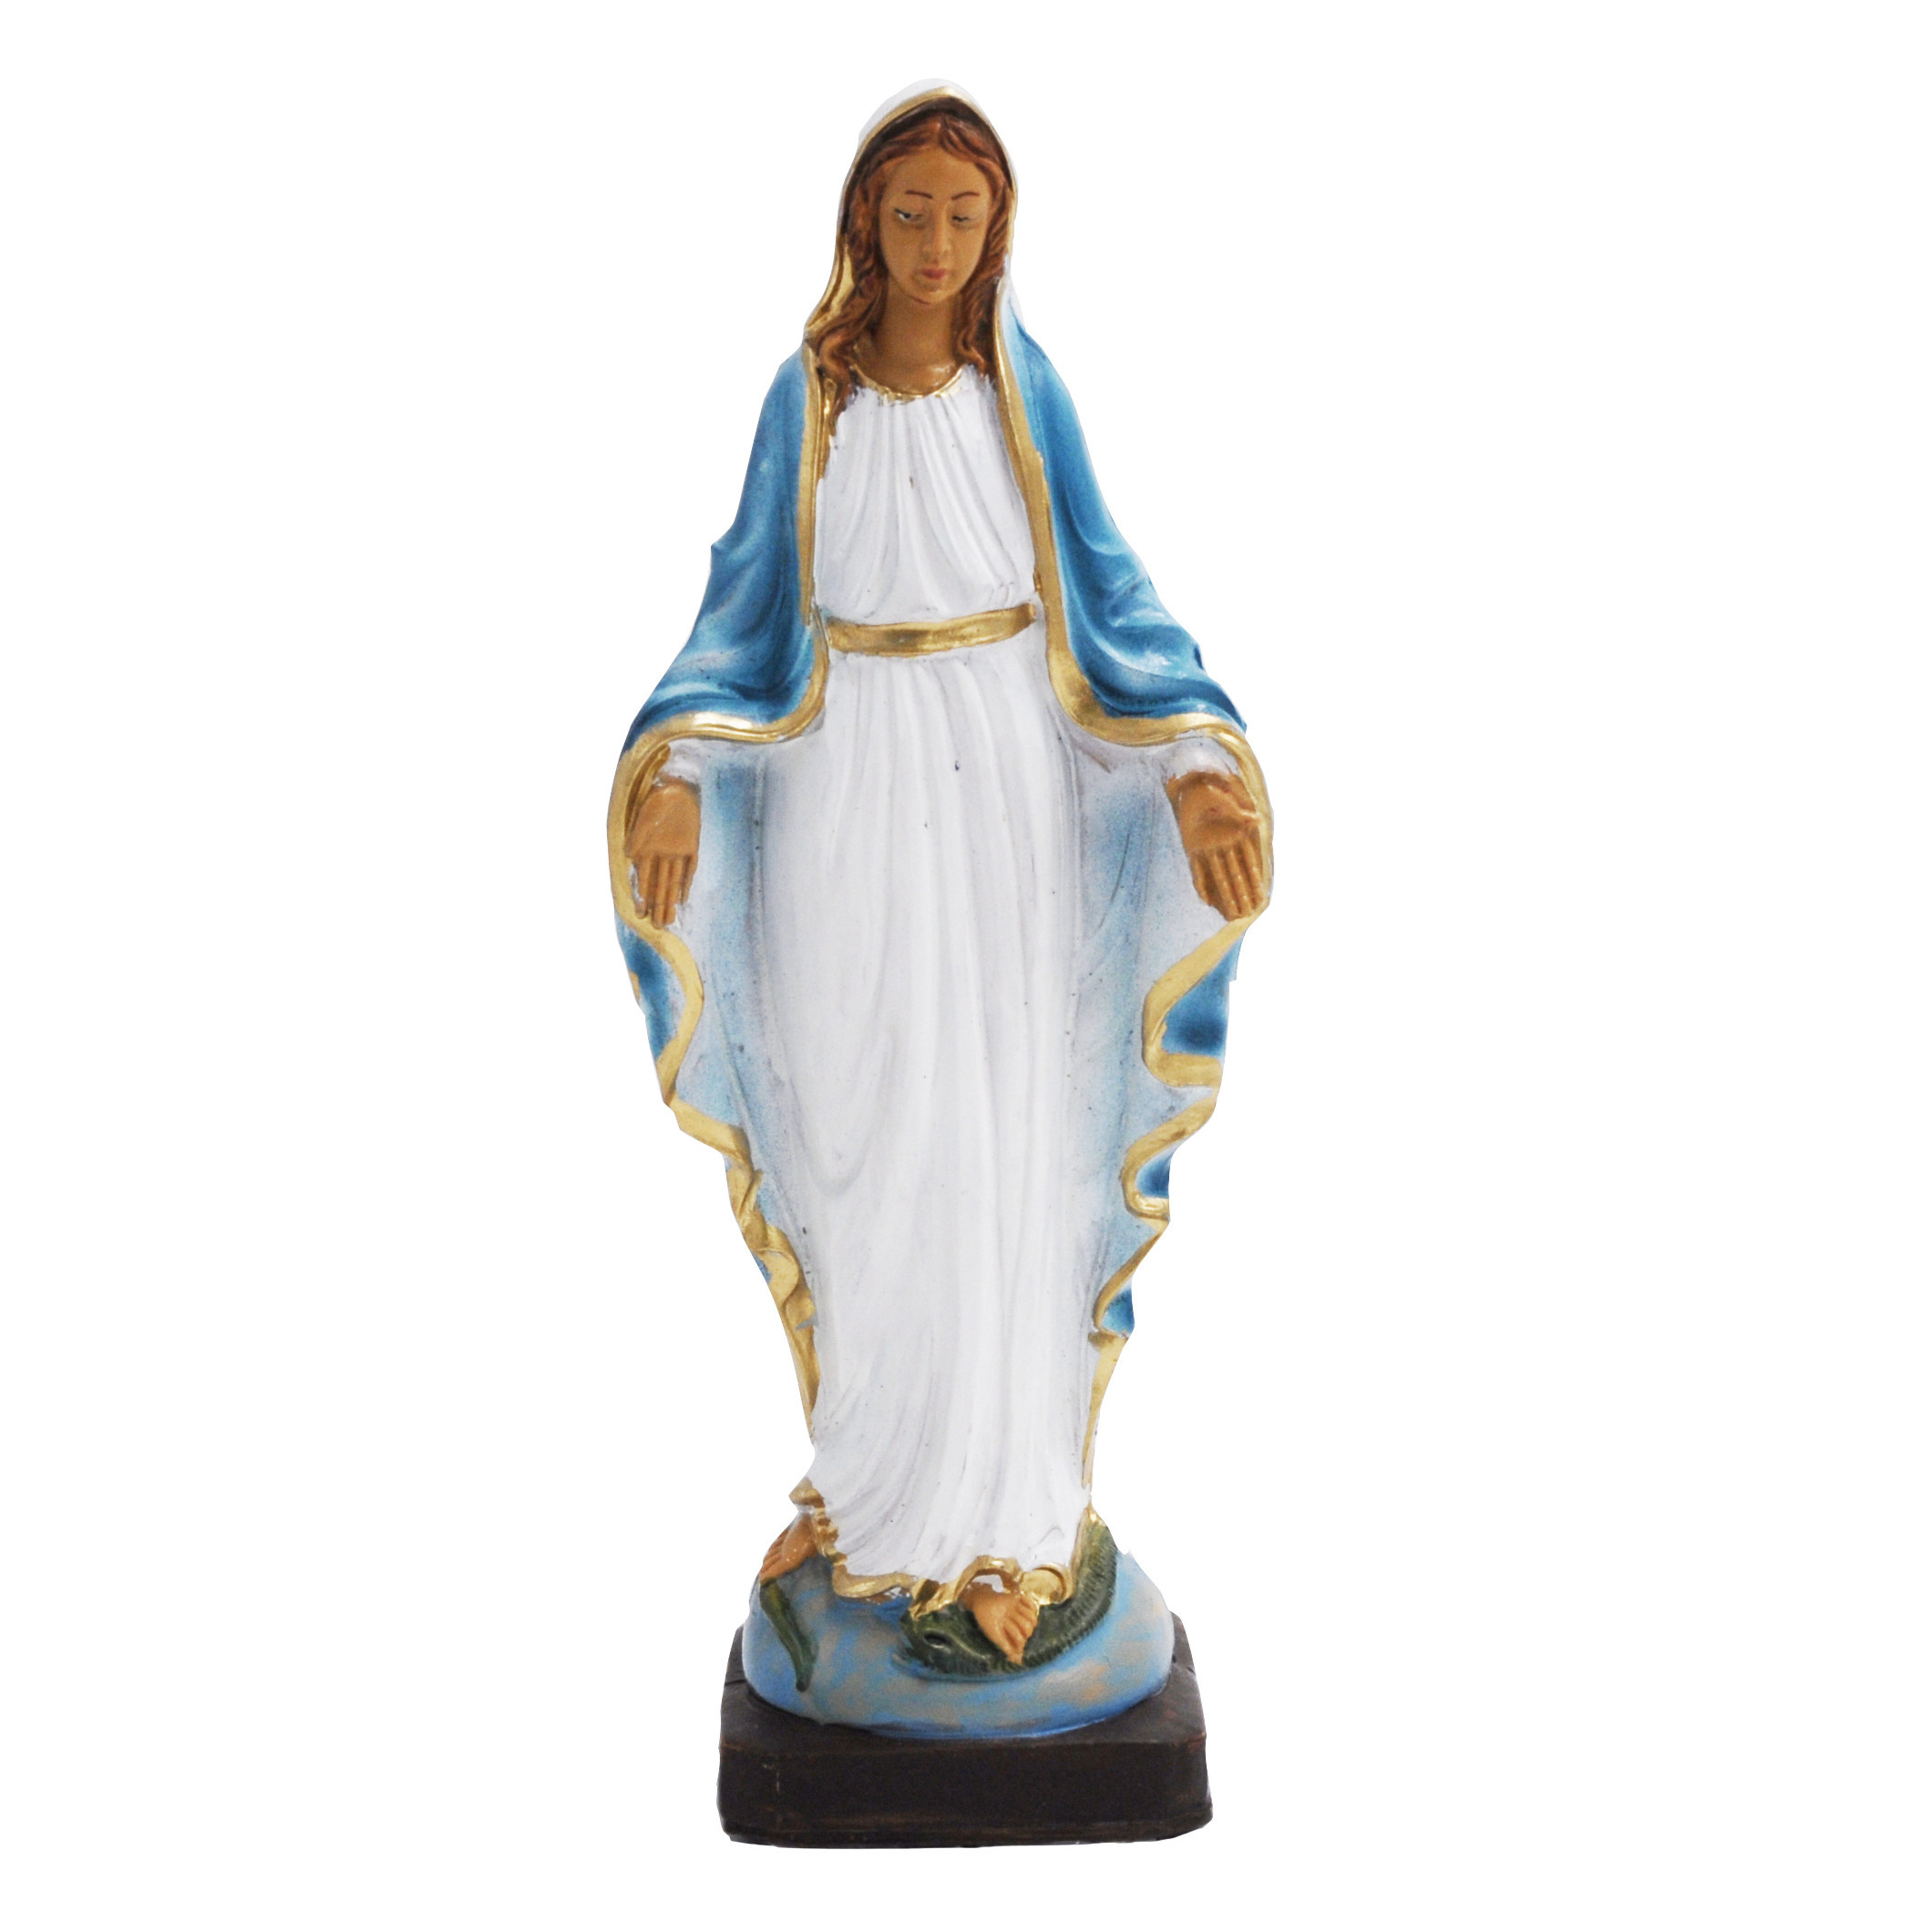 Kerst Maria beeld wit/blauw/goud 20 cm decoratie